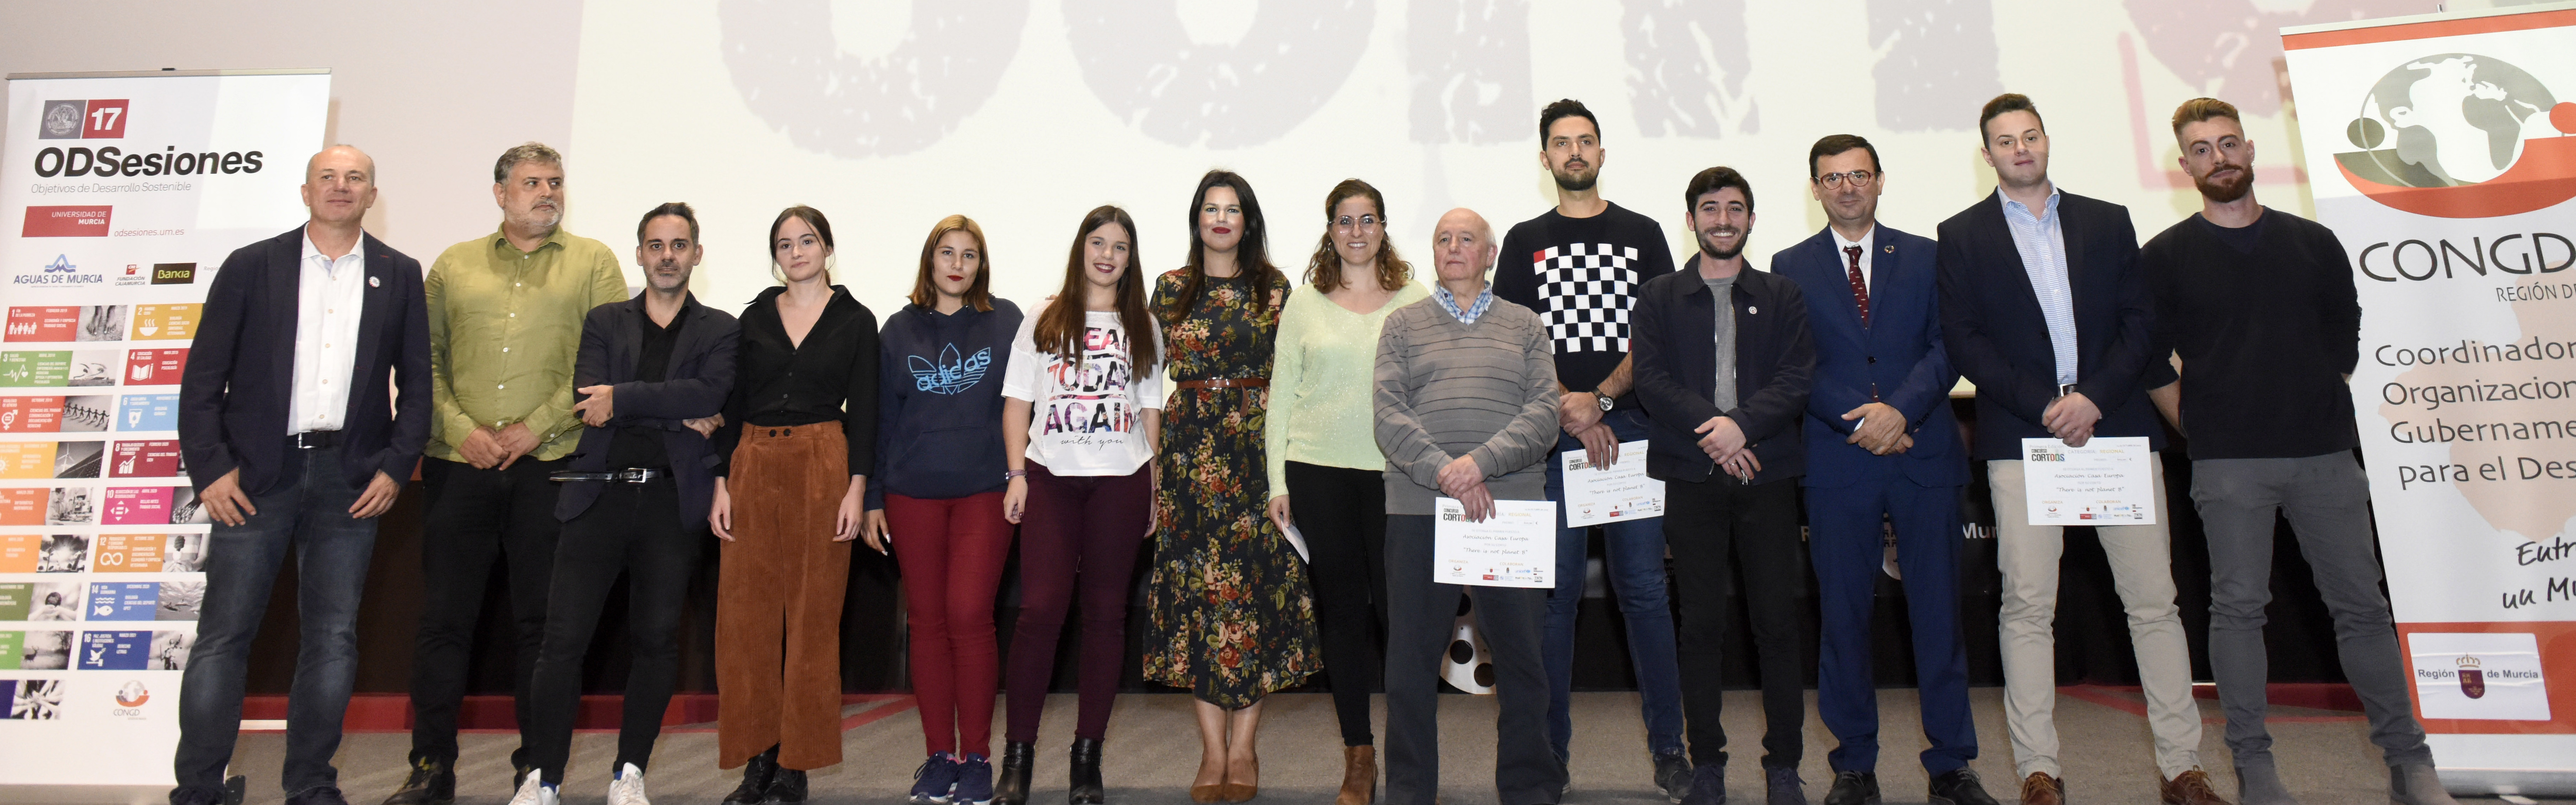 Estudiantes de la Asociación Casa Europa de Cehegín, Bullas y Calasparra se alzan con el premio regional en el certamen ‘CortODS’ de la UMU